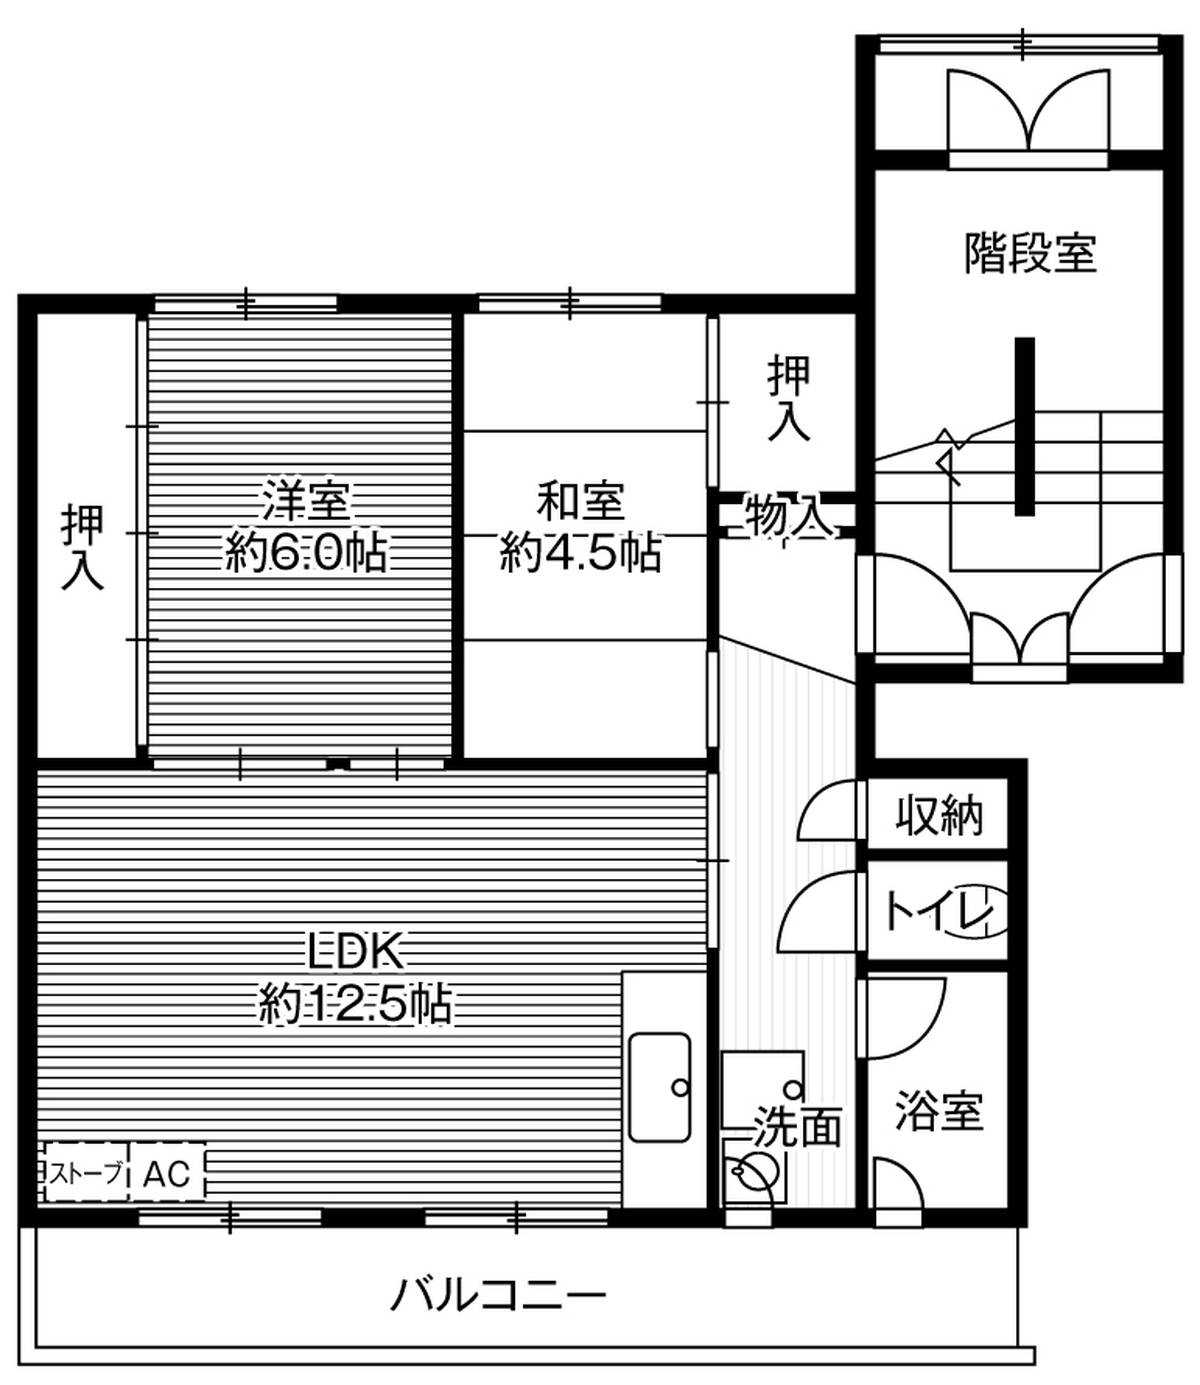 3DK floorplan of Village House Shinkawa in Kita-ku